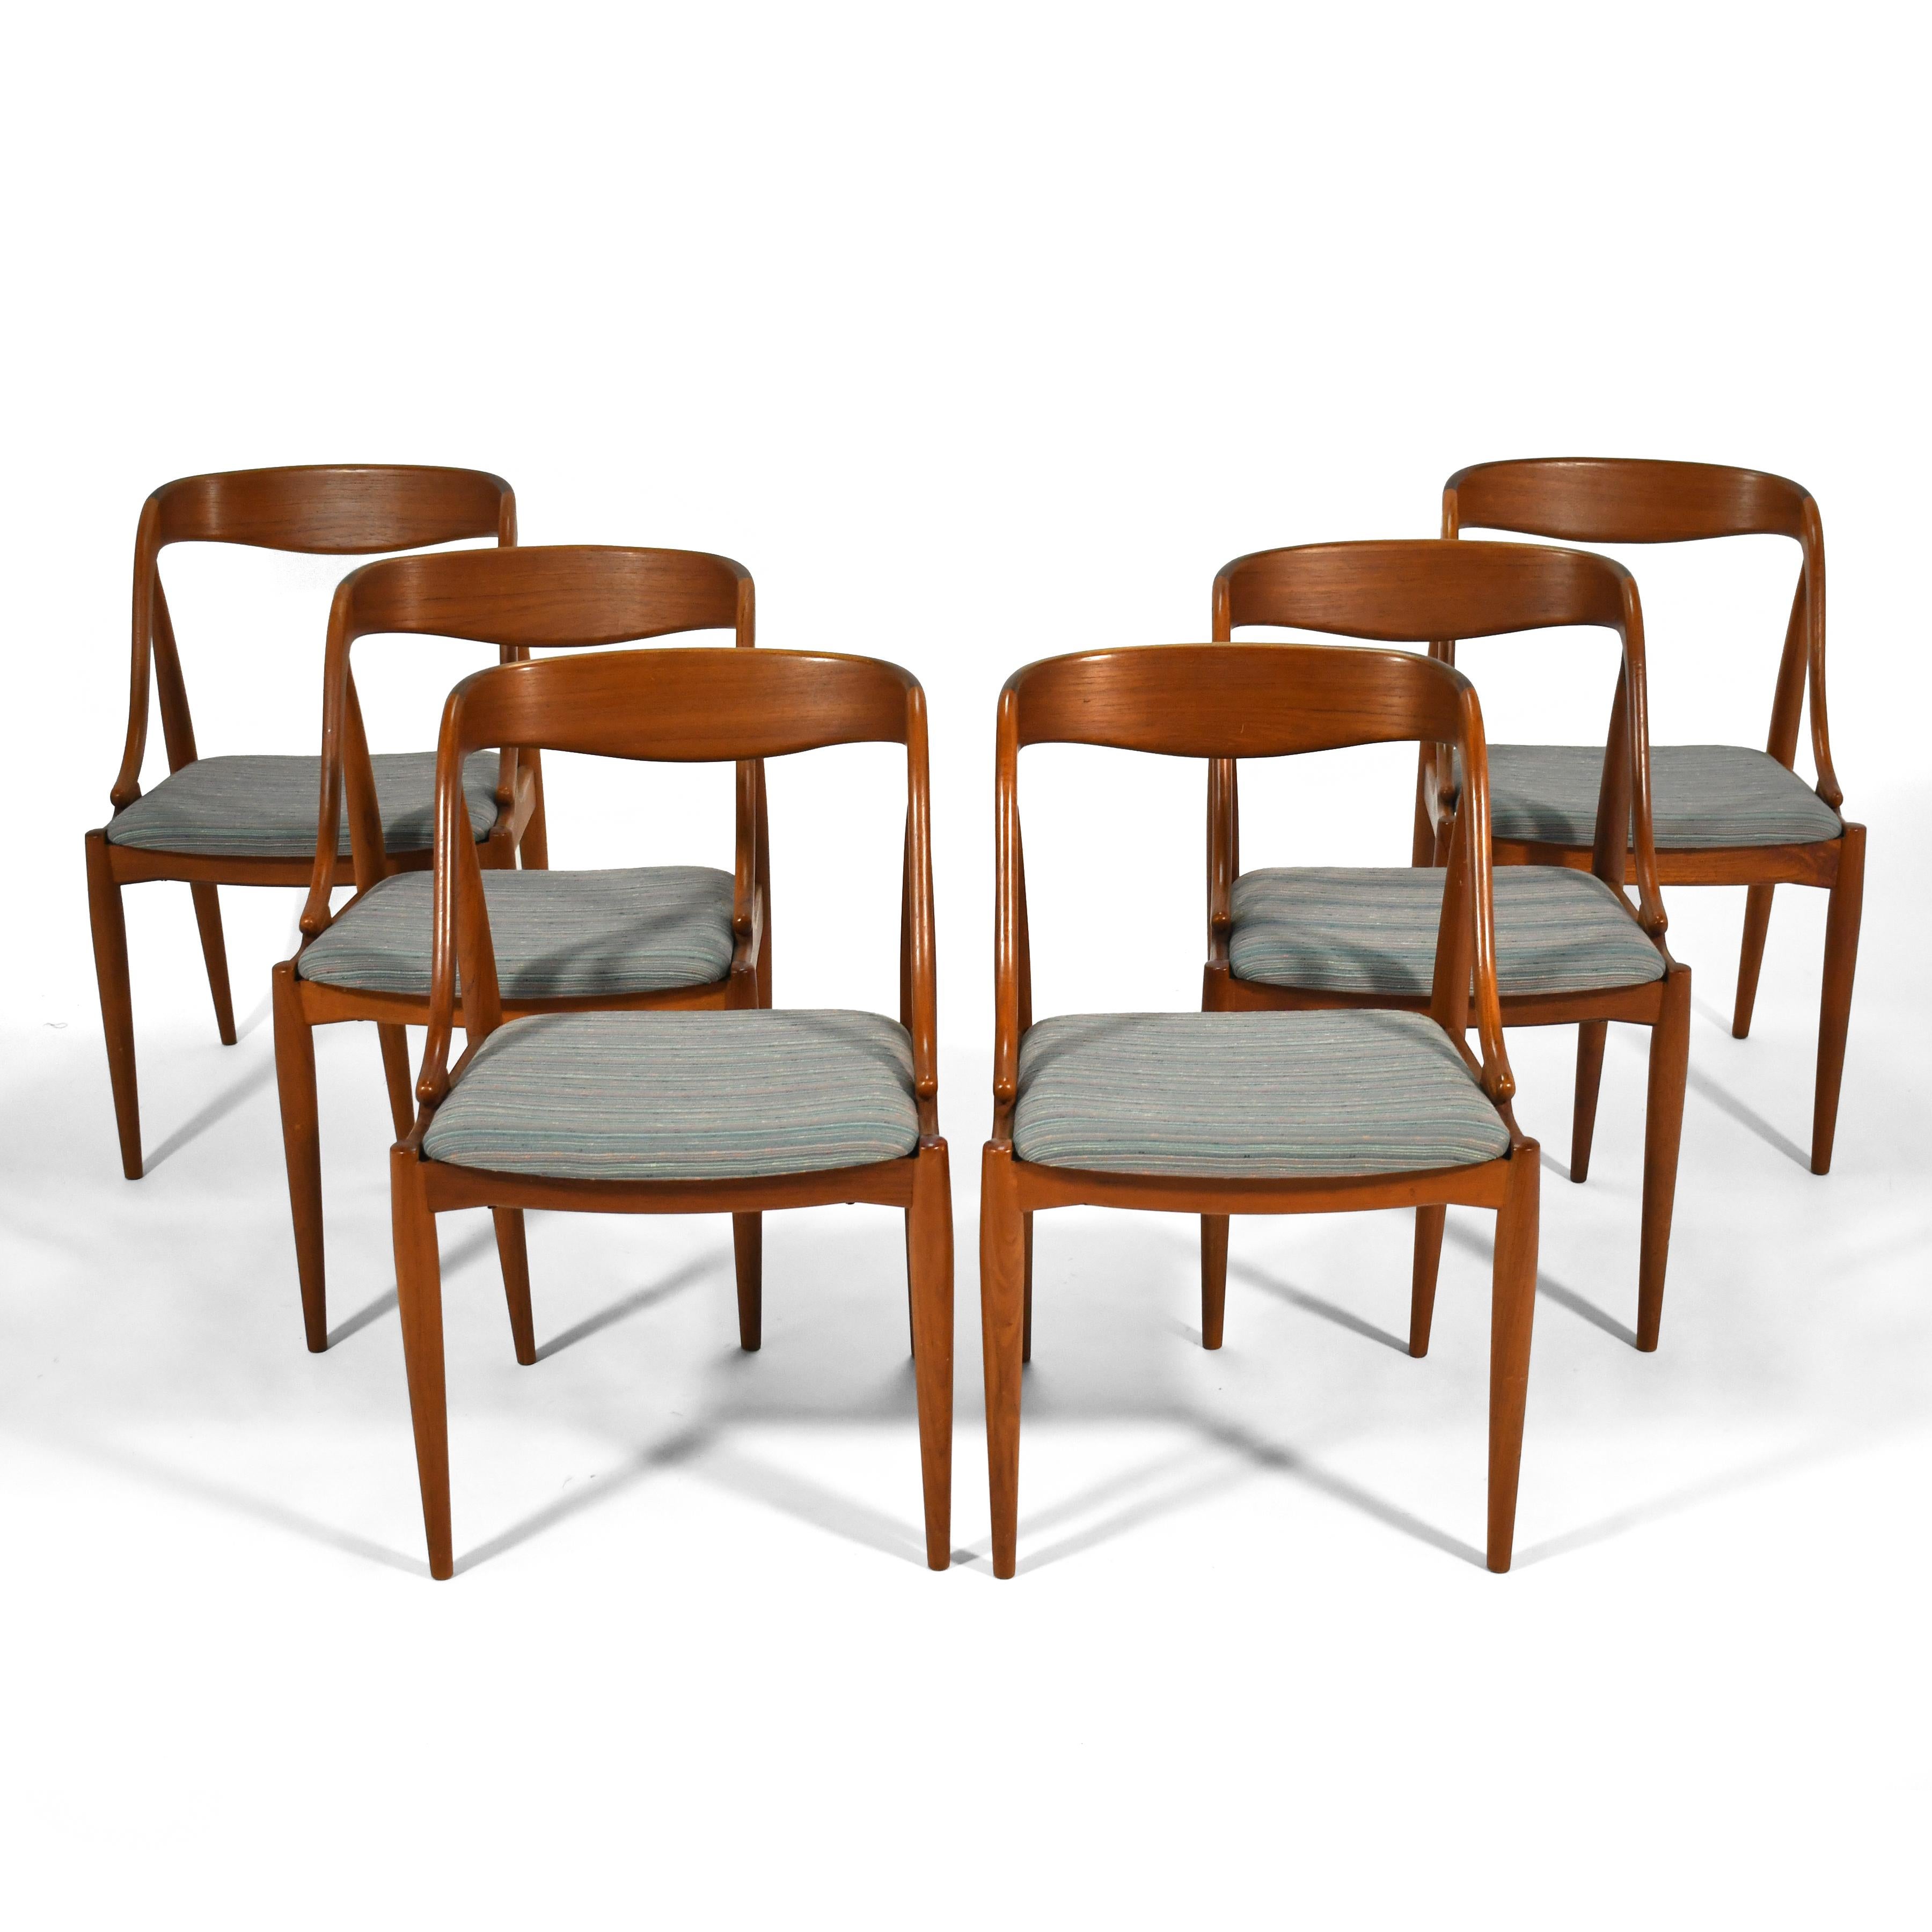 Cet ensemble de six chaises de salle à manger en teck Johannes Andersen d'Uldum Mobelfabrik présente des lignes sculpturales sexy et des pieds légers et effilés. Ils sont aussi confortables que beaux.

Mesures : 30